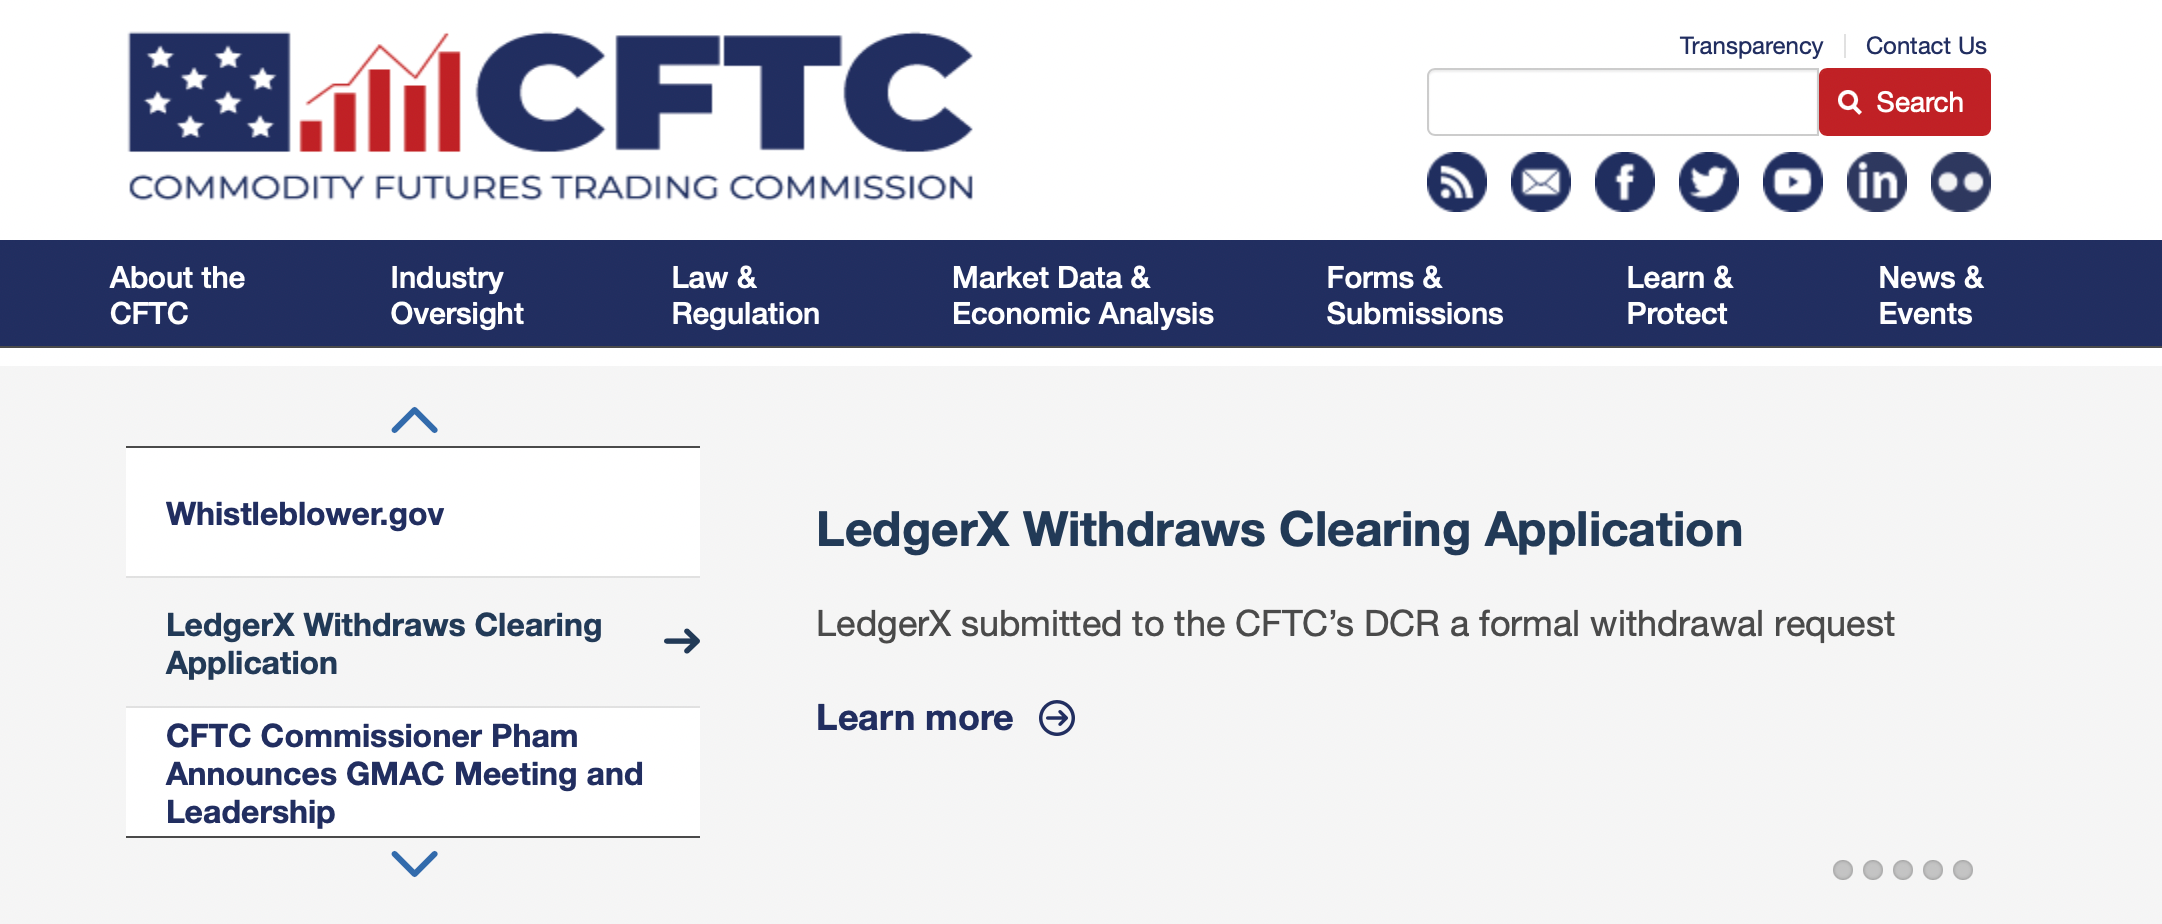 CFTC Website